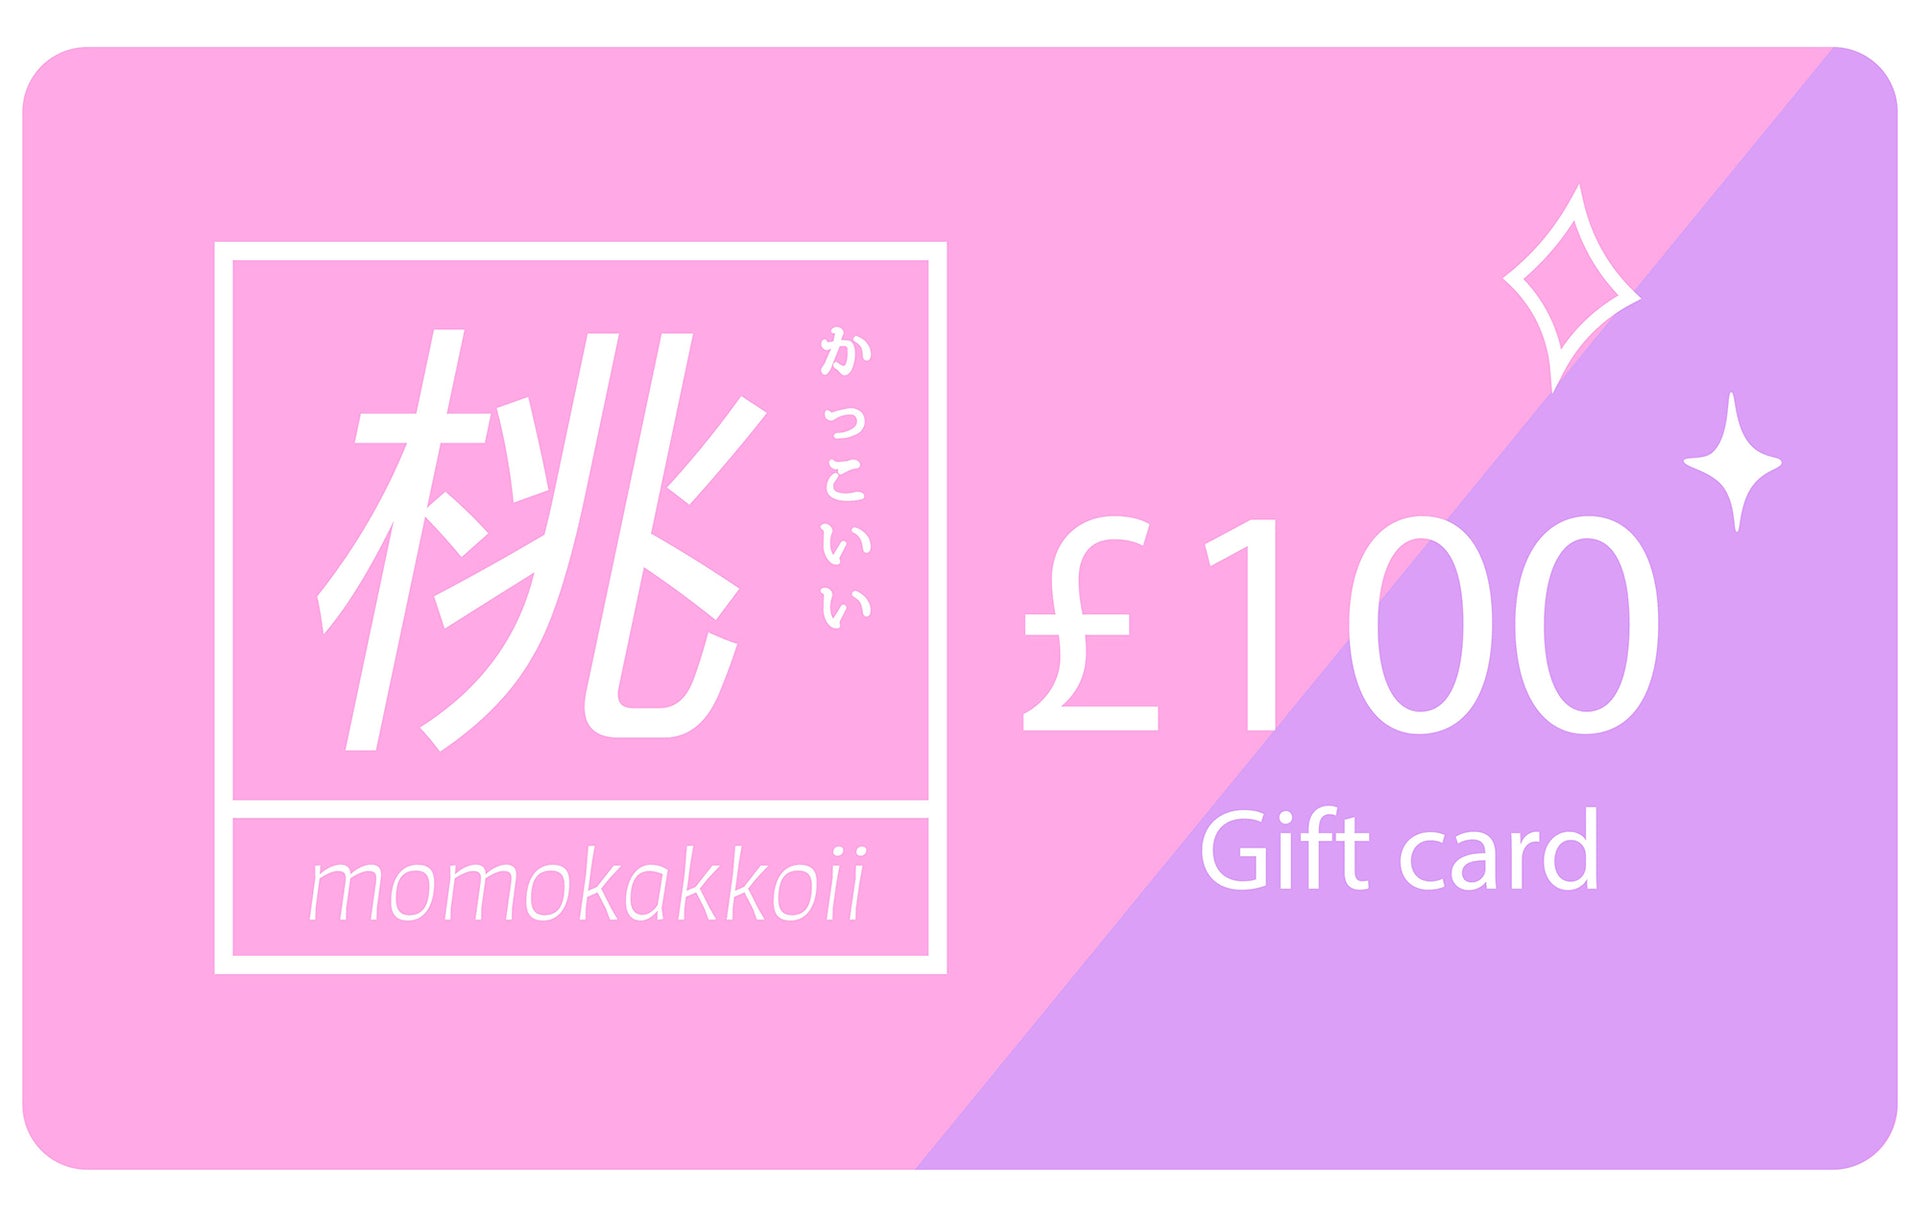 E-Gift Card - Momokakkoii